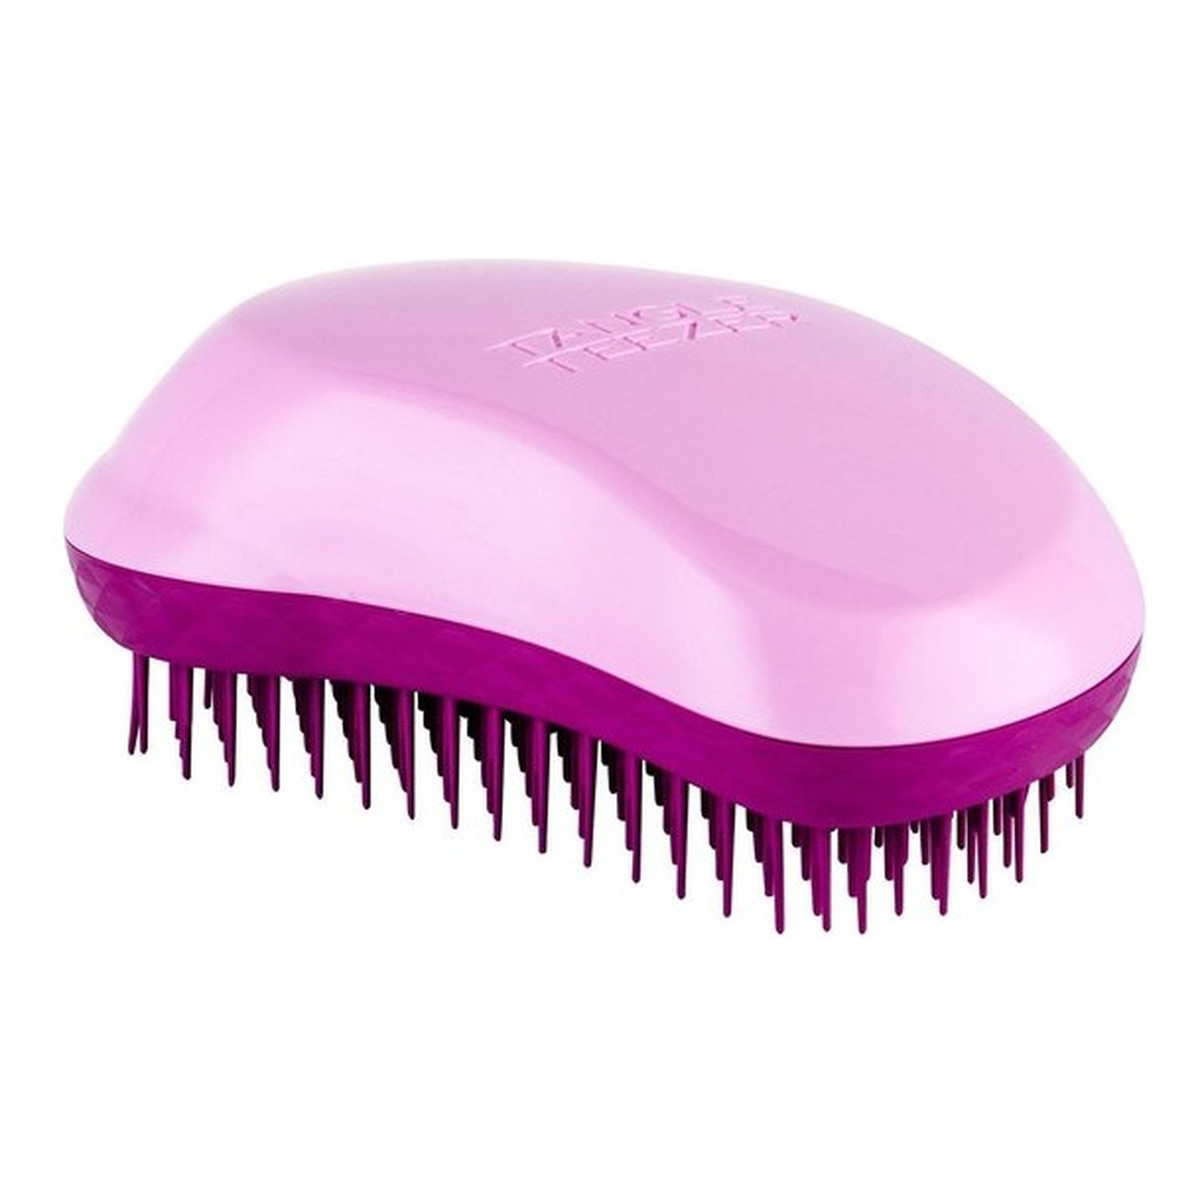 Tangle Teezer The original hairbrush szczotka do włosów pink cupid